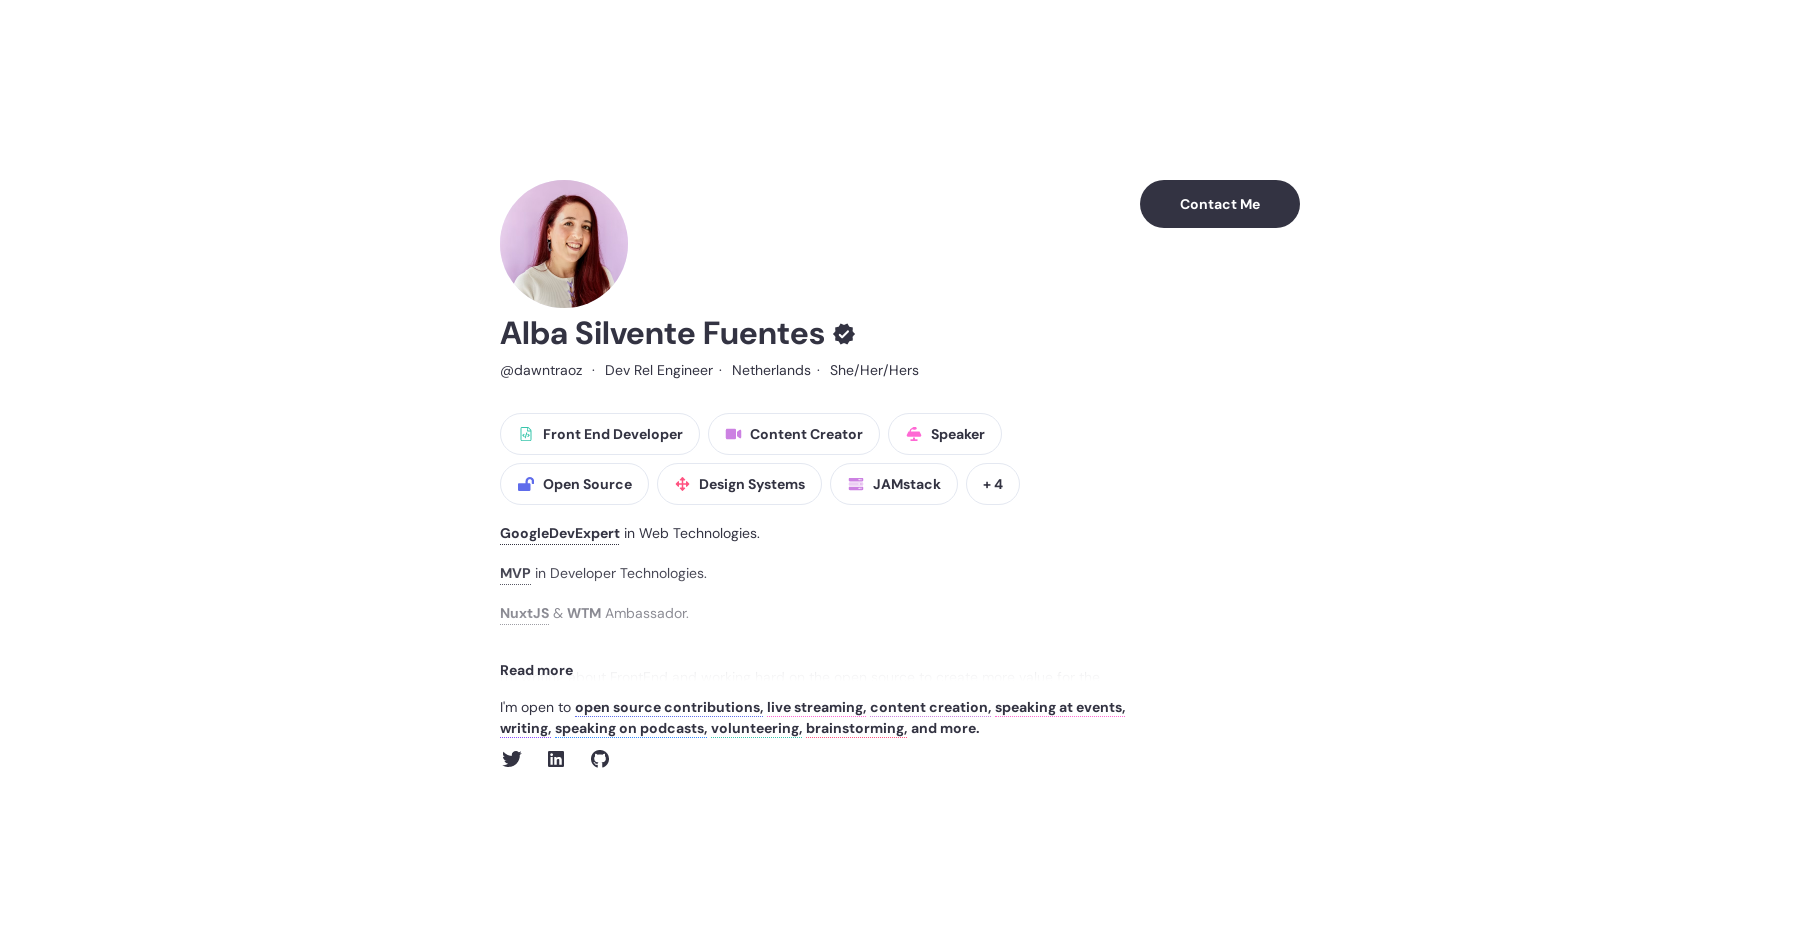 Alba Silvente Fuentes' personal website